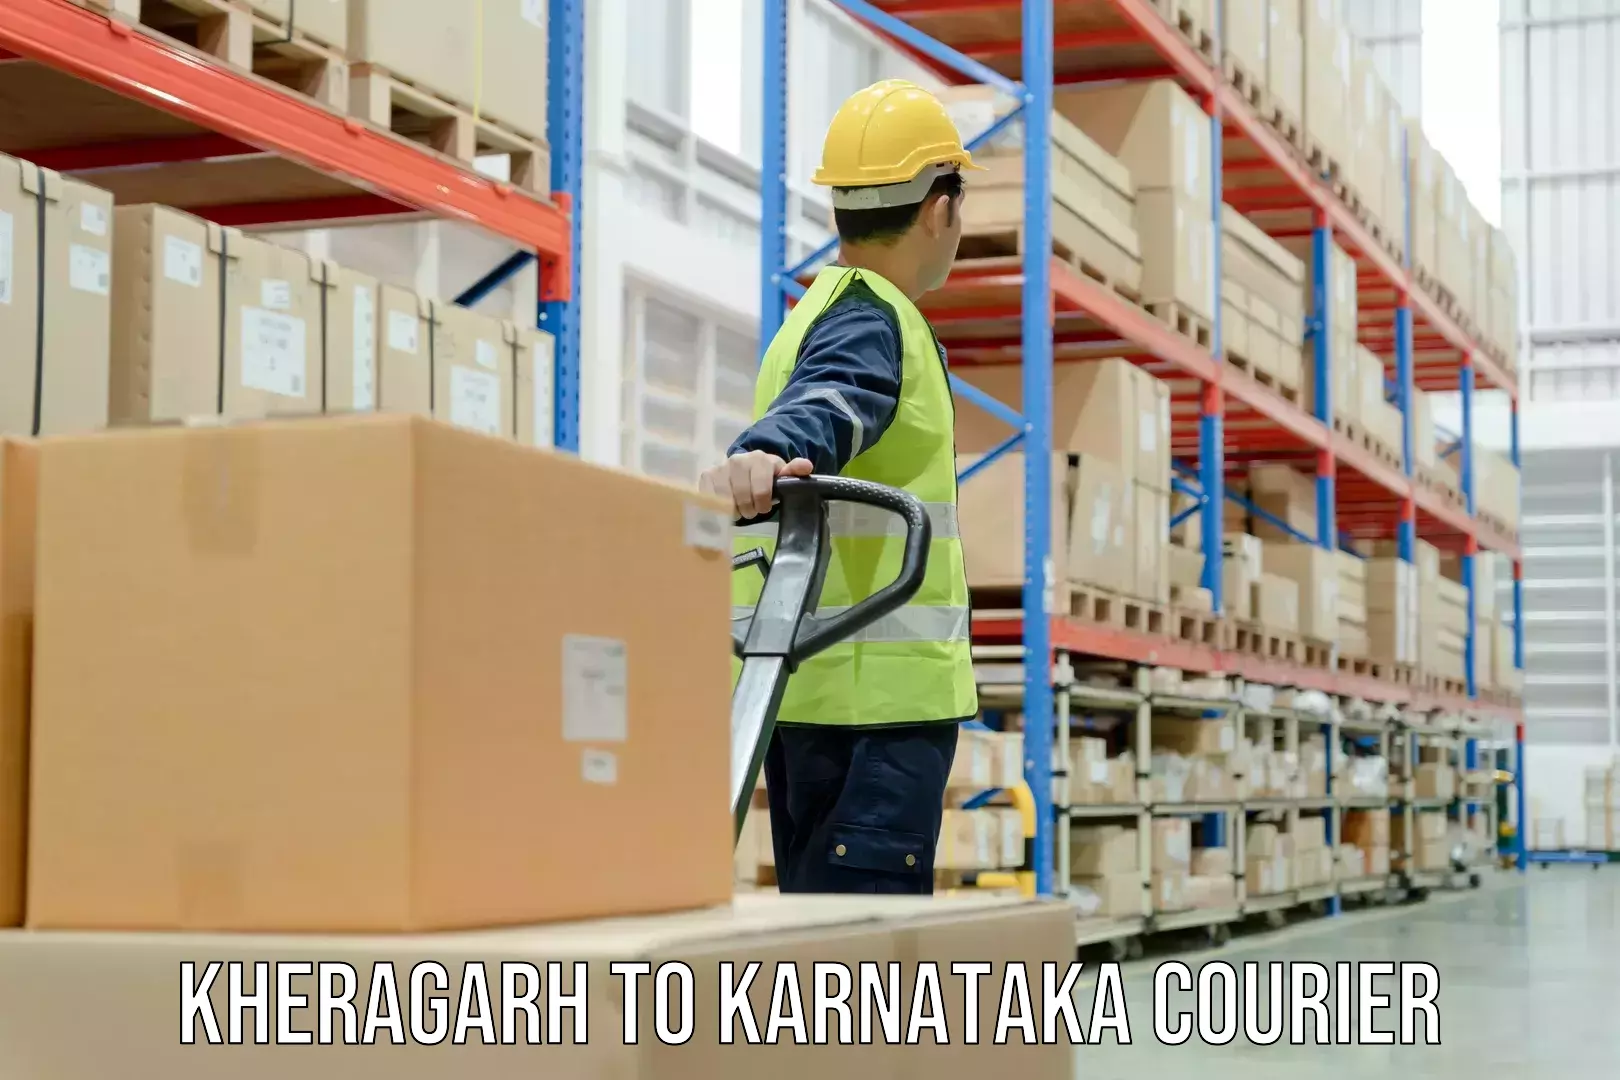 Custom courier solutions Kheragarh to Karnataka